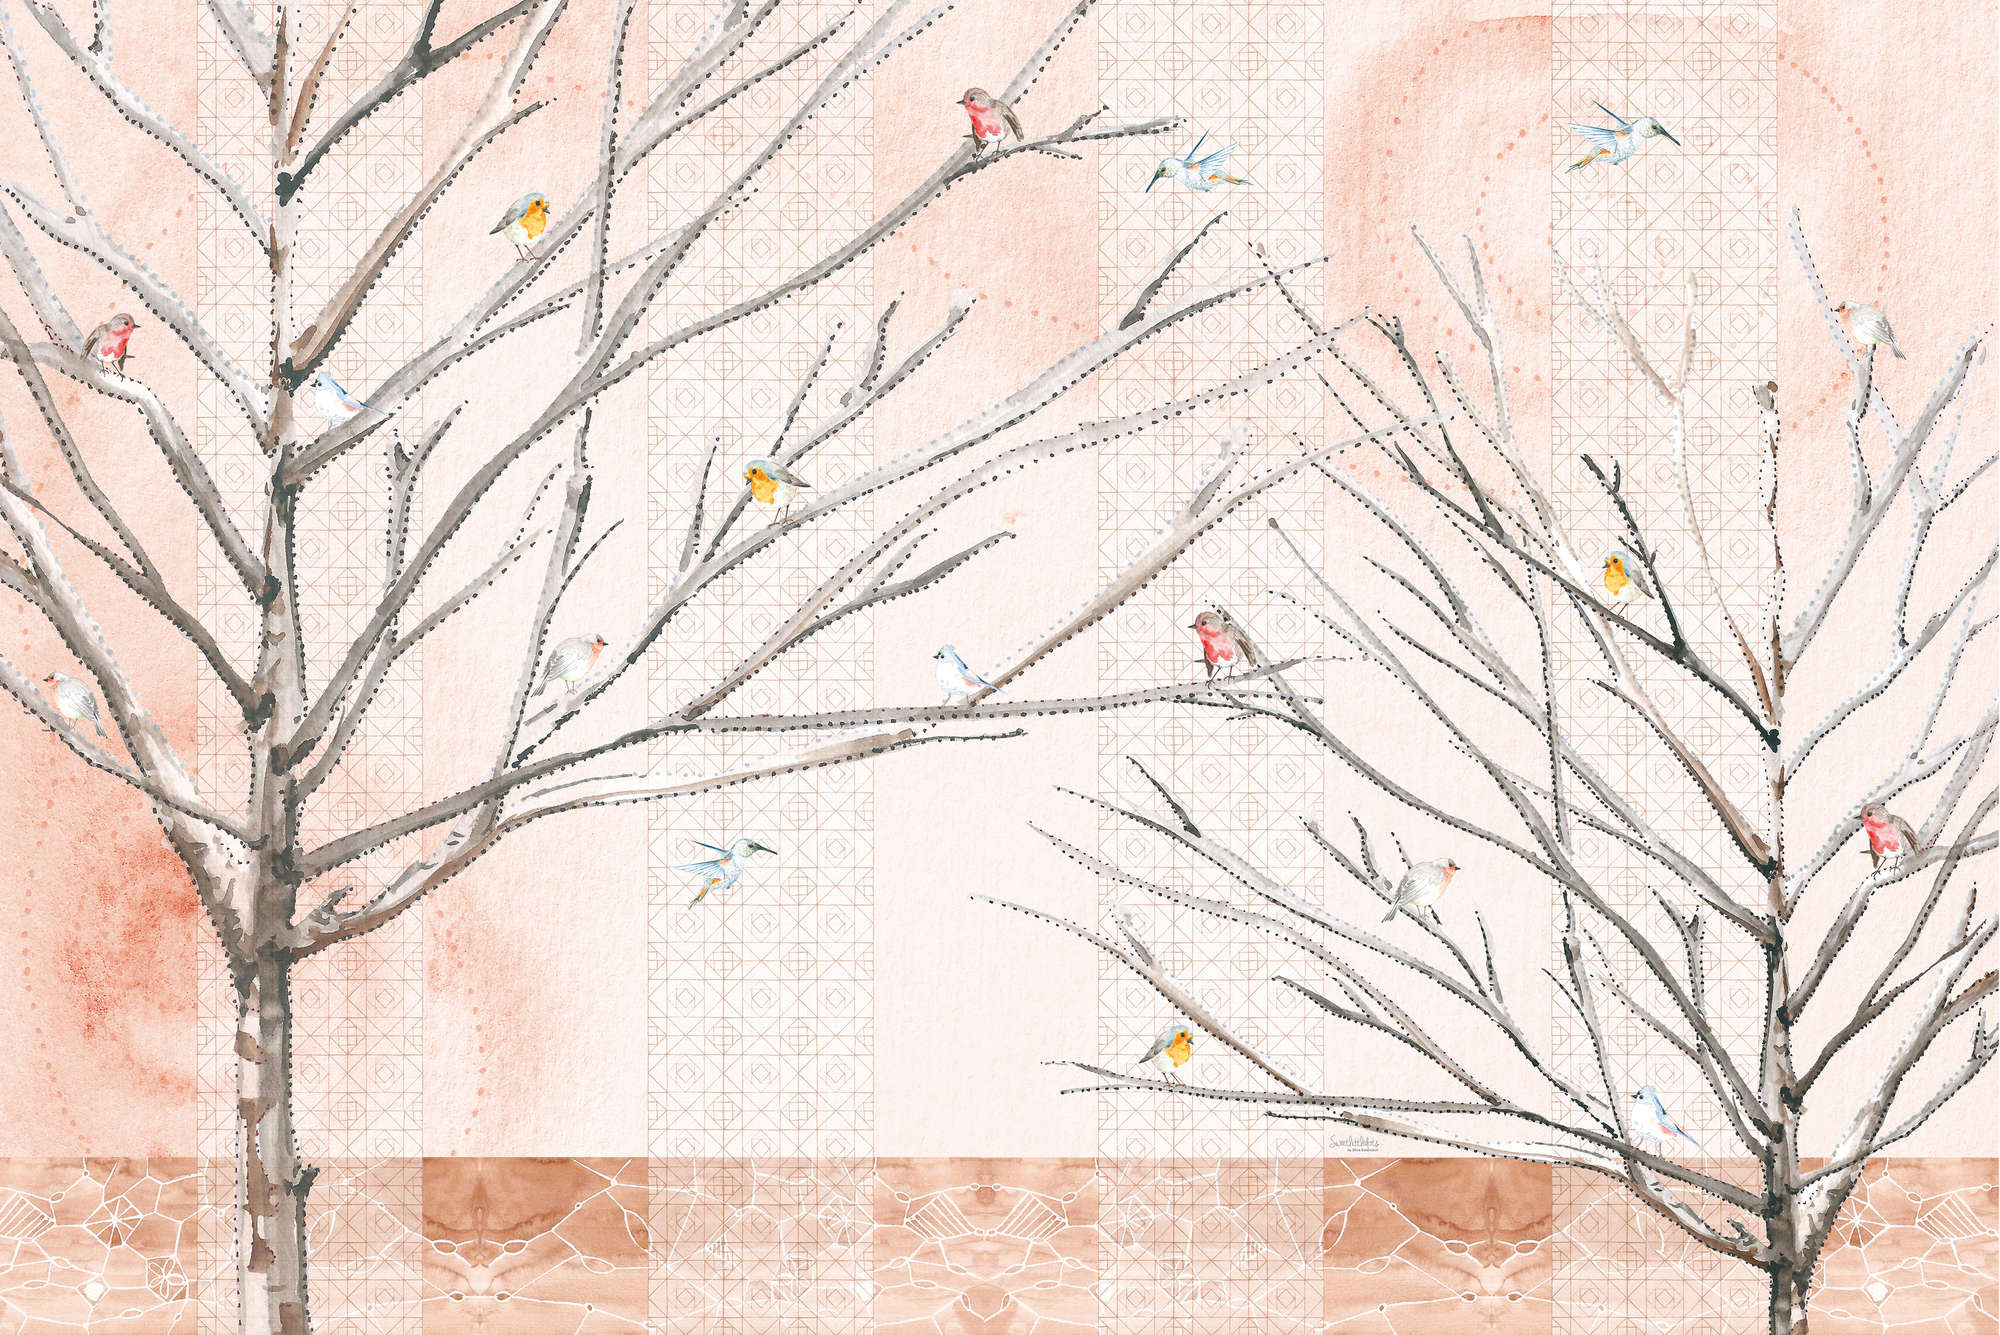             Papel pintado artístico de árboles con pájaros en beige y marrón sobre vellón liso de primera calidad
        